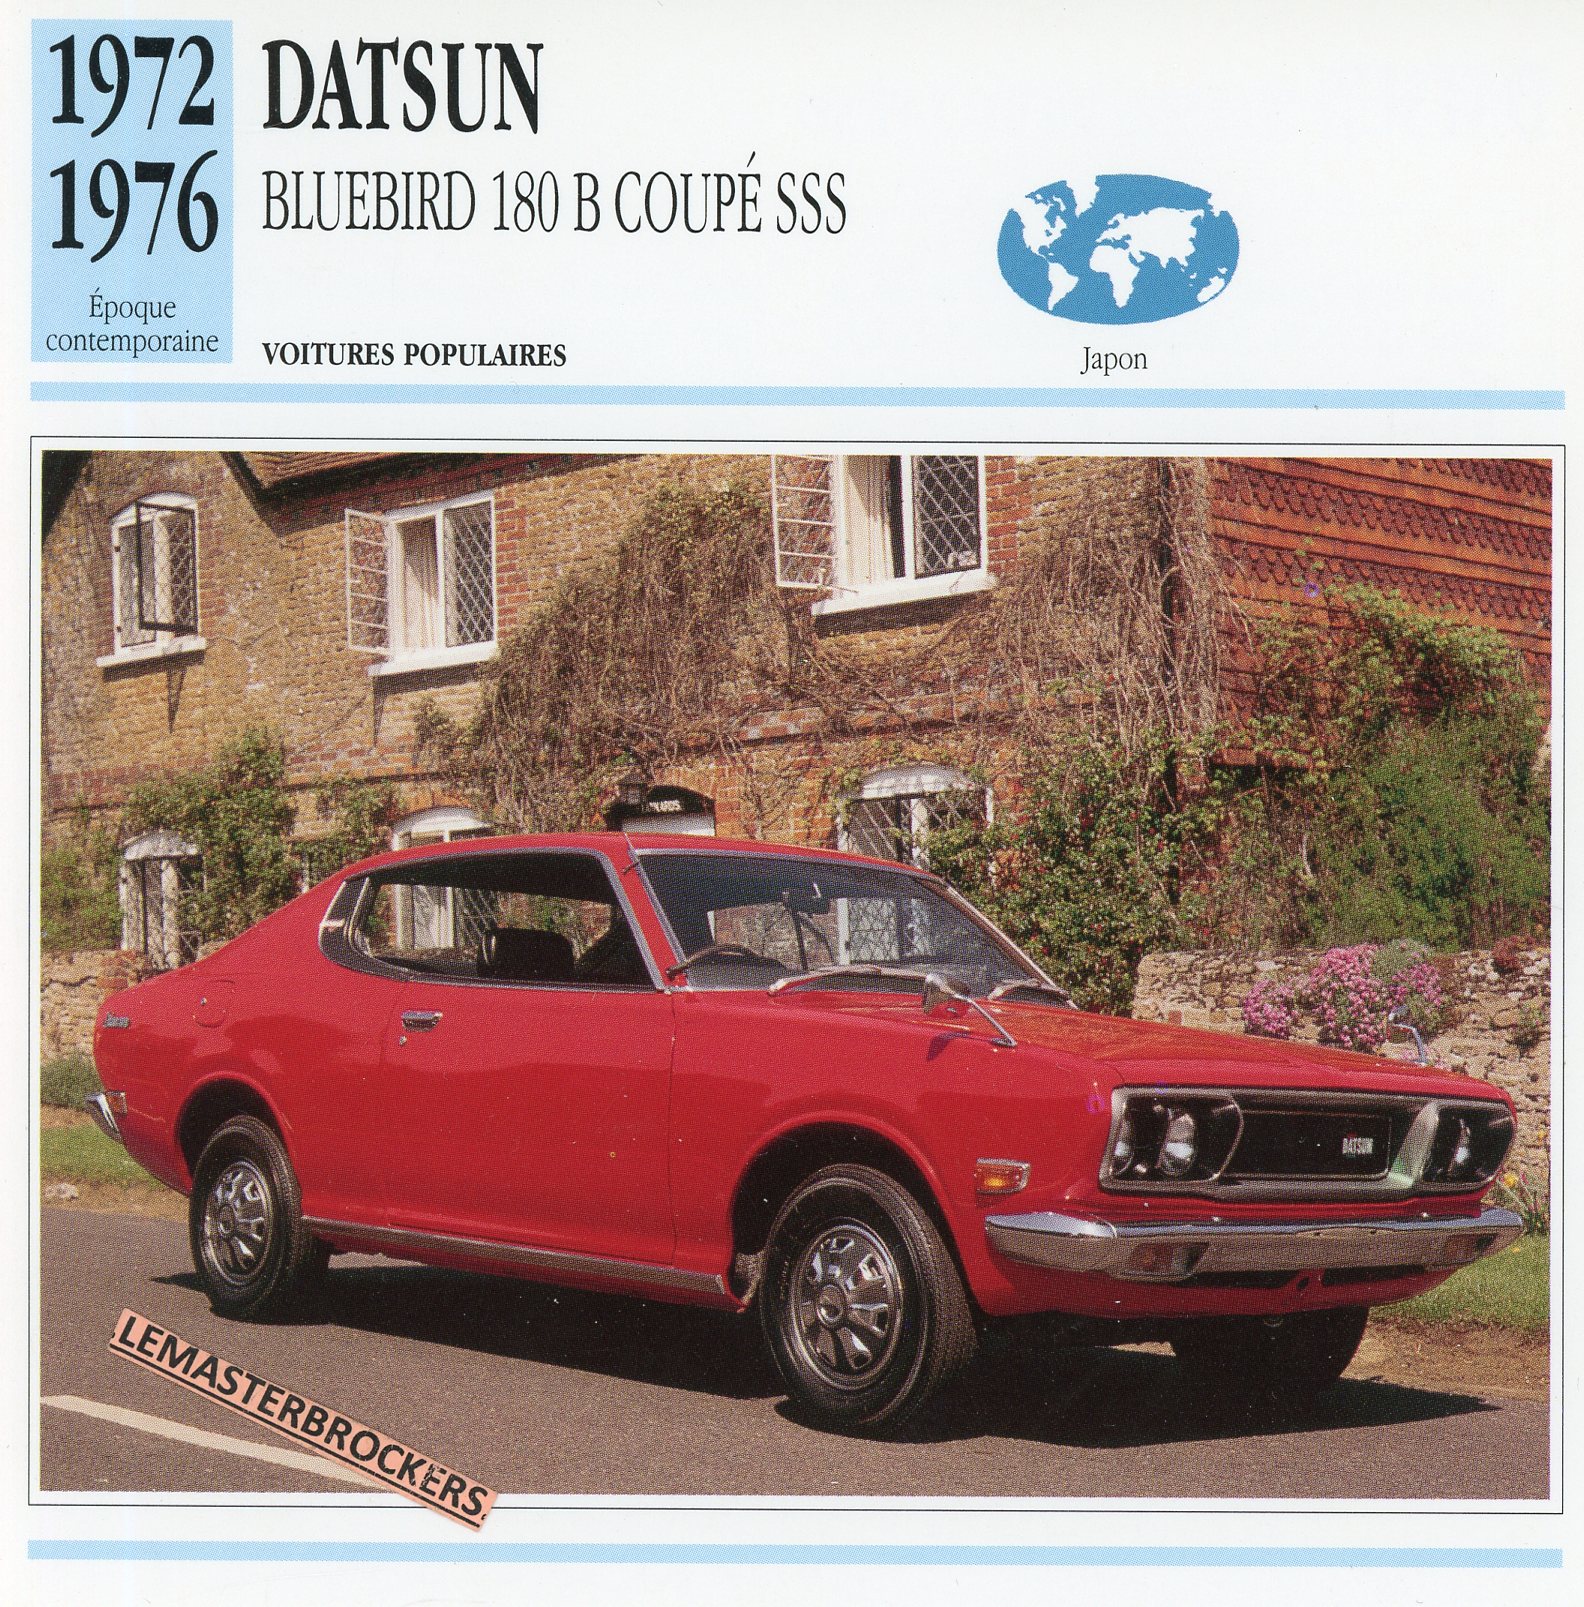 DATSUN-BLUEBIRD-180-B-COUPE-SSS-1972-1976-FICHE-AUTO-CARD-CARS-LEMASTERBROCKERS